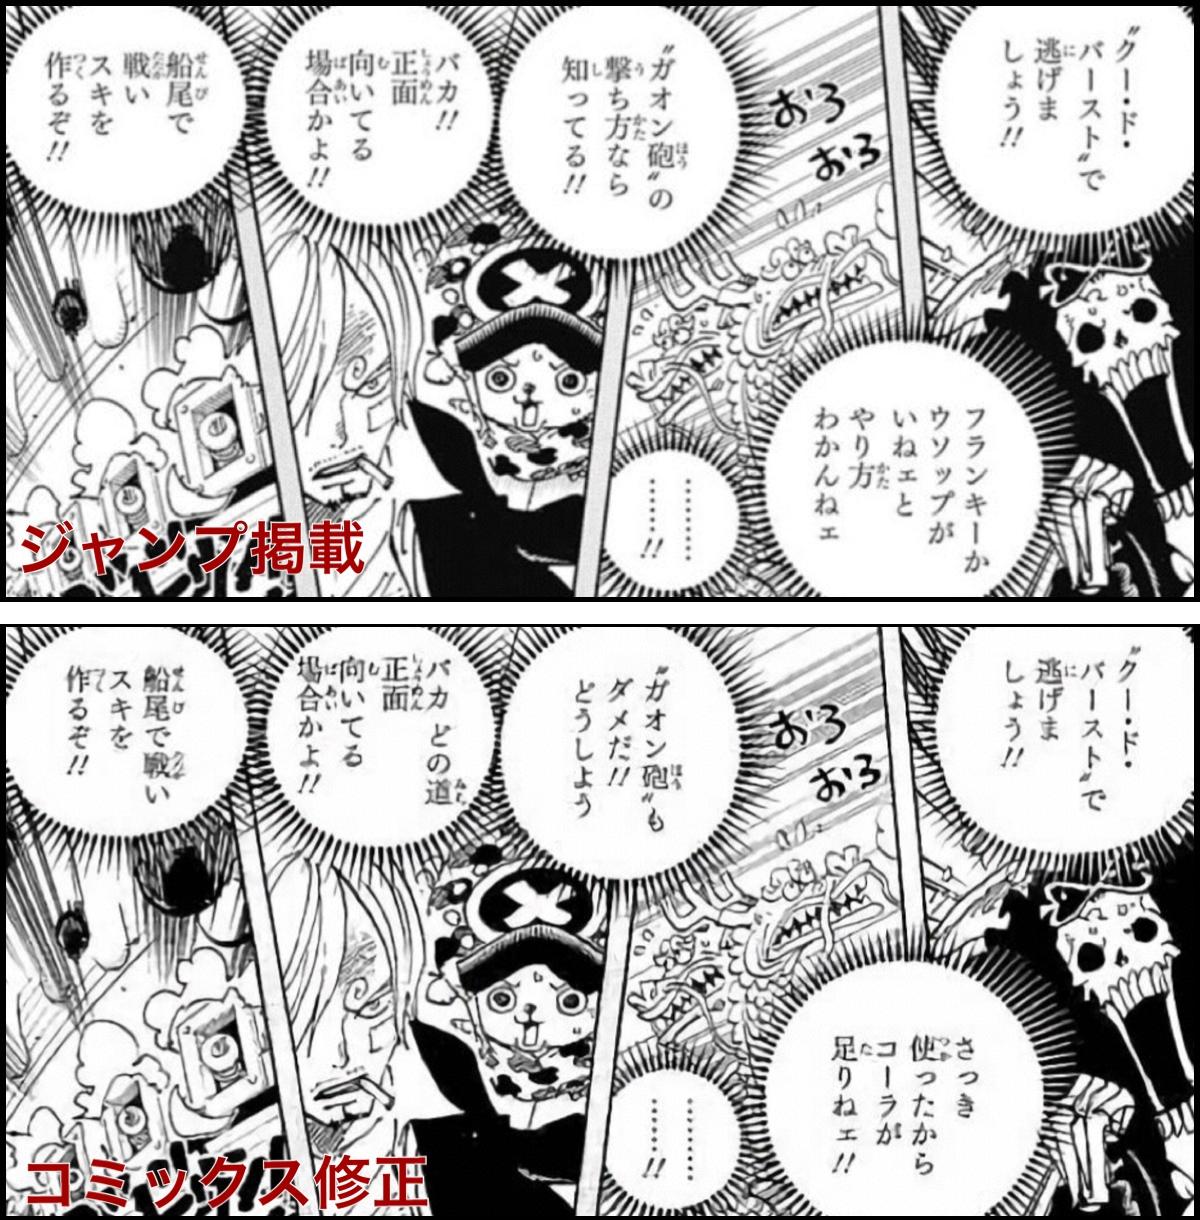 ワンピース One Piece セット 本 1 81巻 Lidofoundation Org Uk